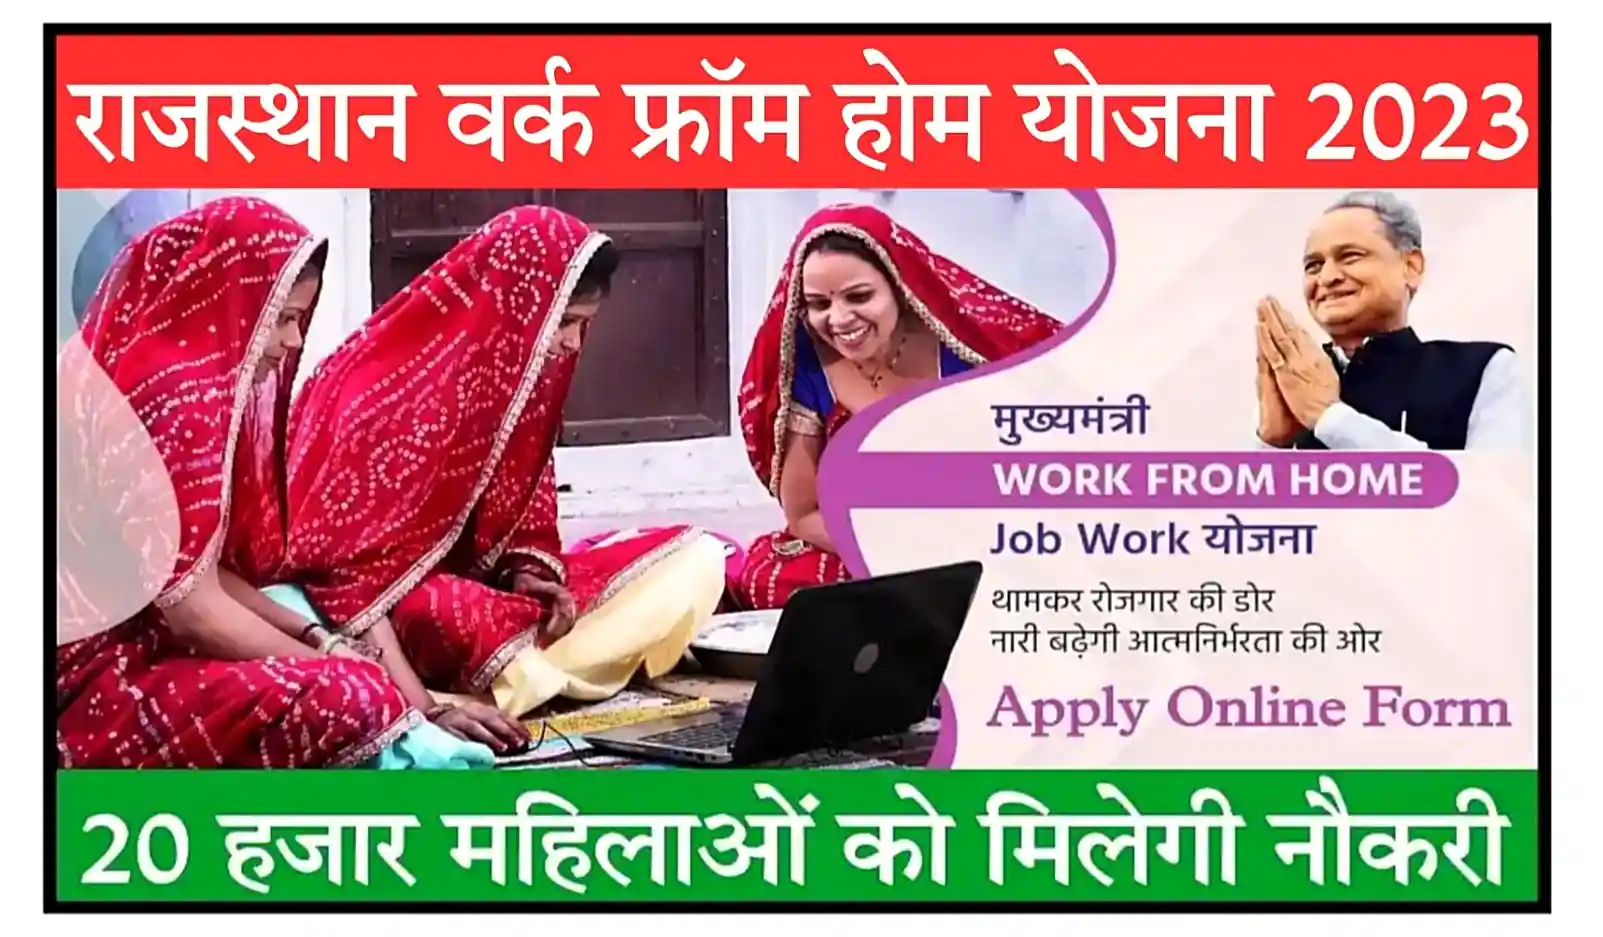 Rajasthan Work From Home Yojana 2023 महिलाओं के लिए योजना, घर बैठे काम करे और पैसे कमाए, ऑनलाइन आवेदन शुरू